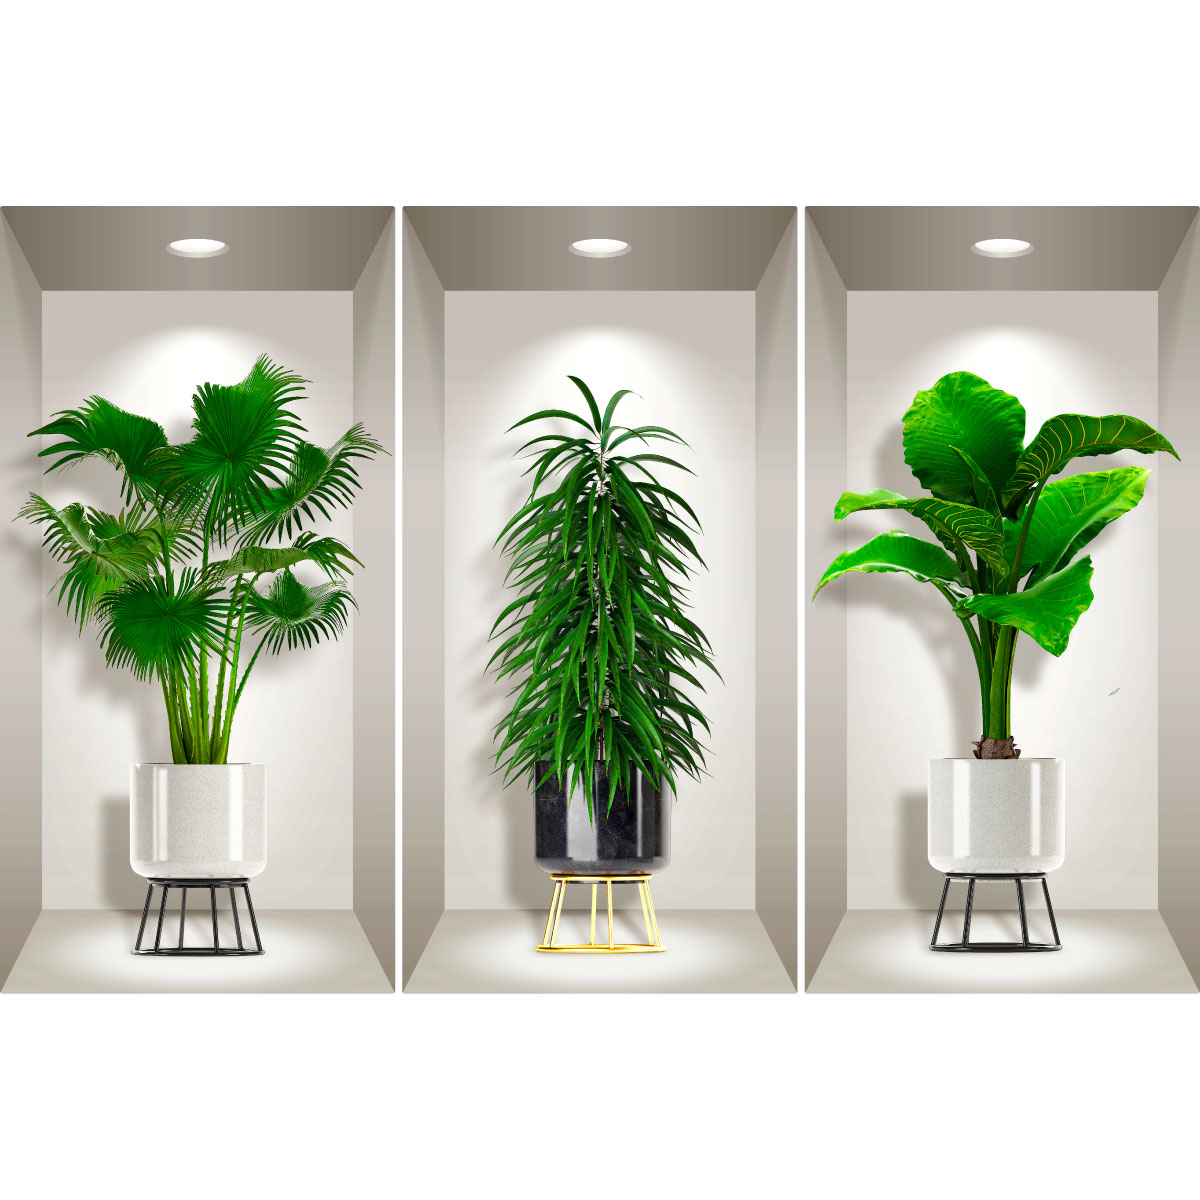 Vase autocollant mural 3D, autocollant mural plantes vertes